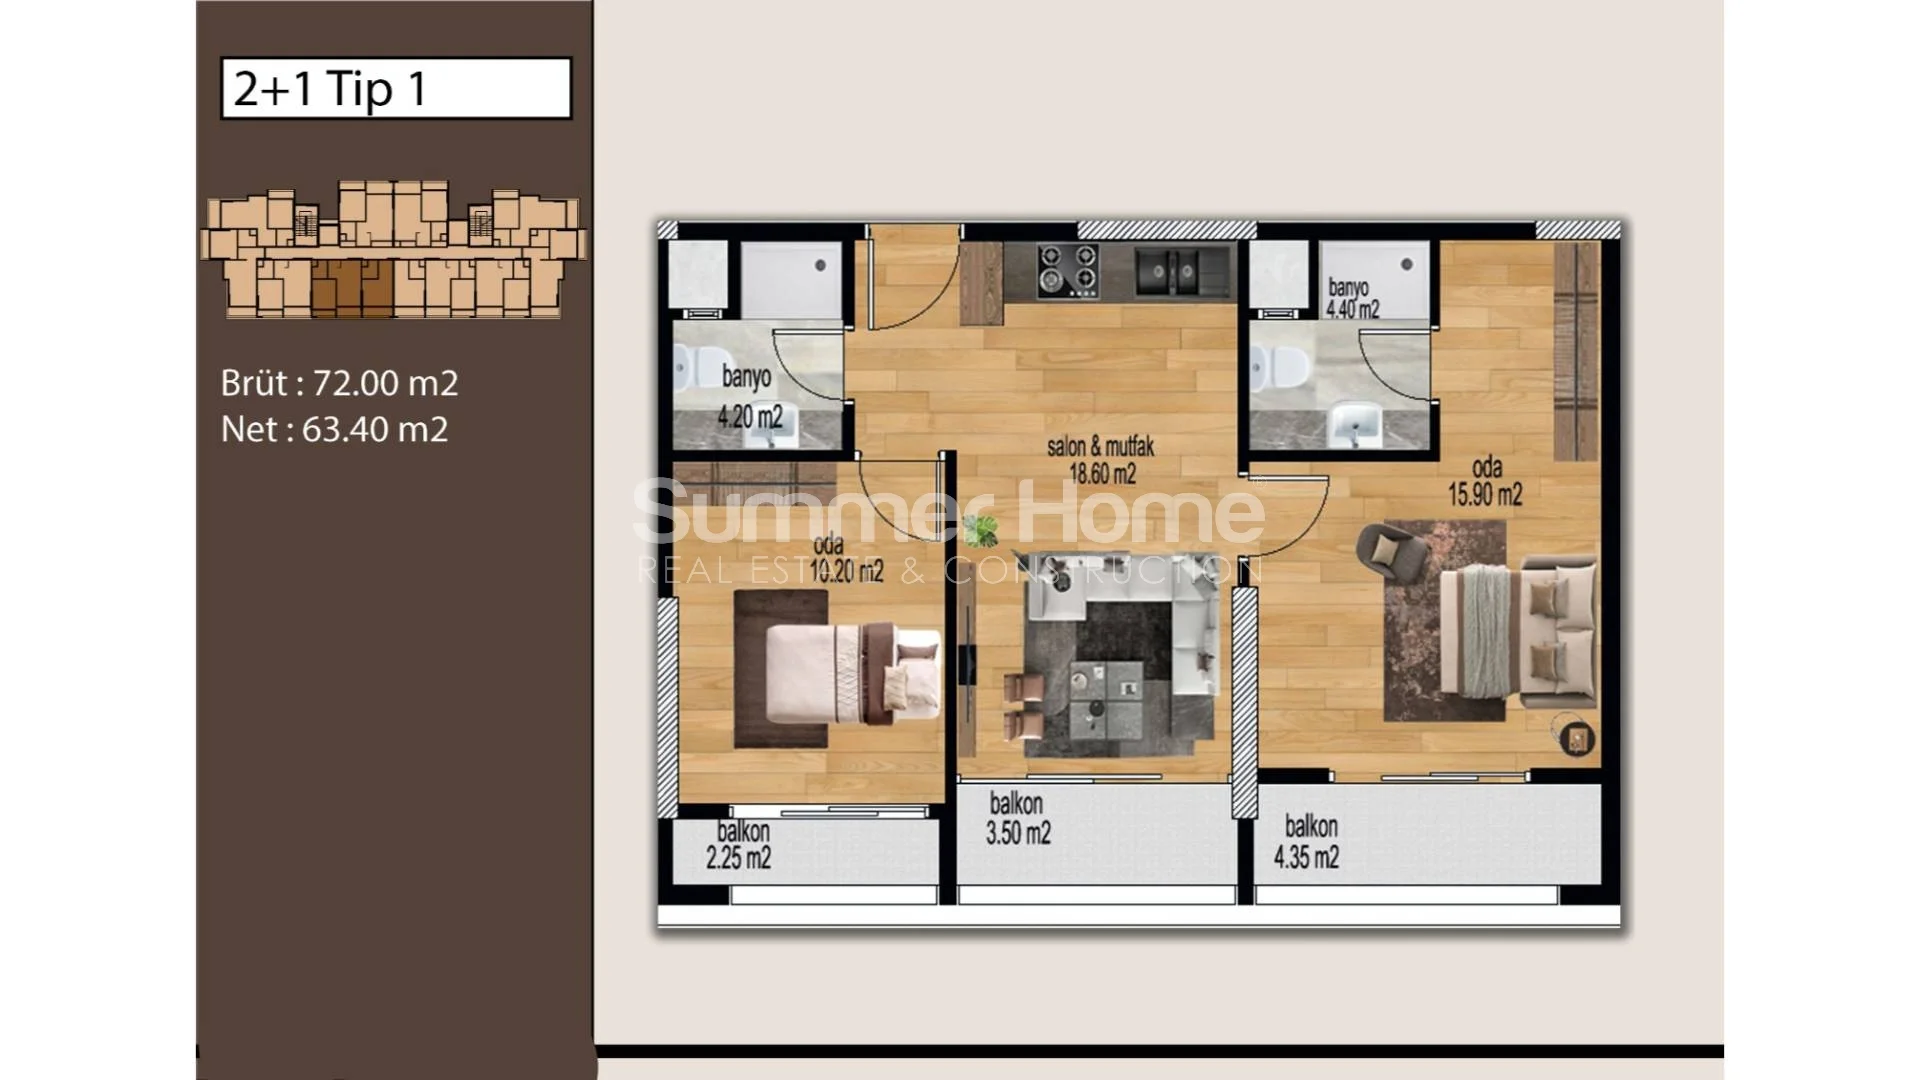 Mezitli, Mersin'de bulunan güzel modern daireler Plan - 19